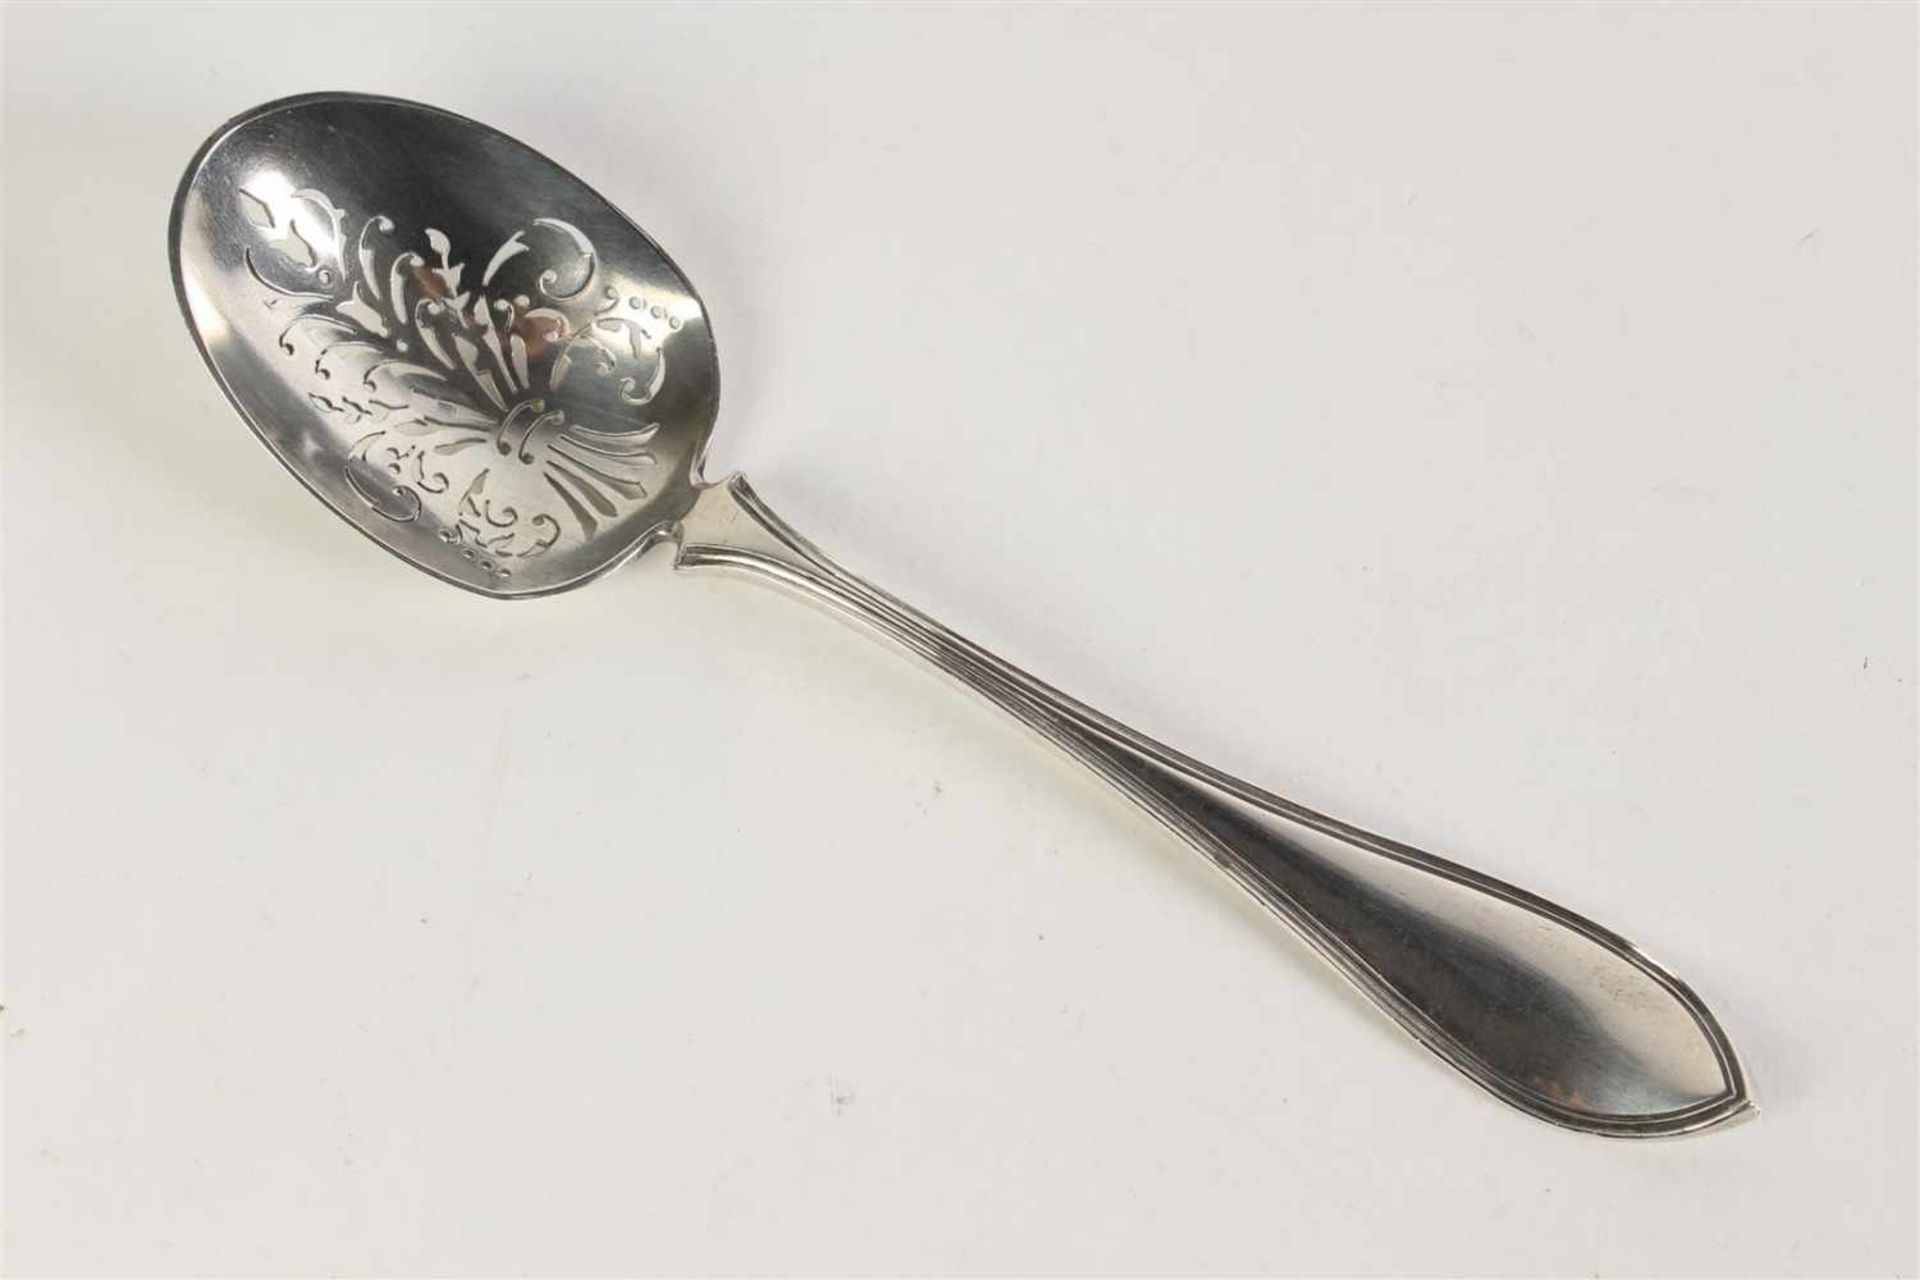 Zilveren suikerstrooi lepel dubbel puntfilet met ajour bak, vervaardigd door G. Greup (1888-?) te